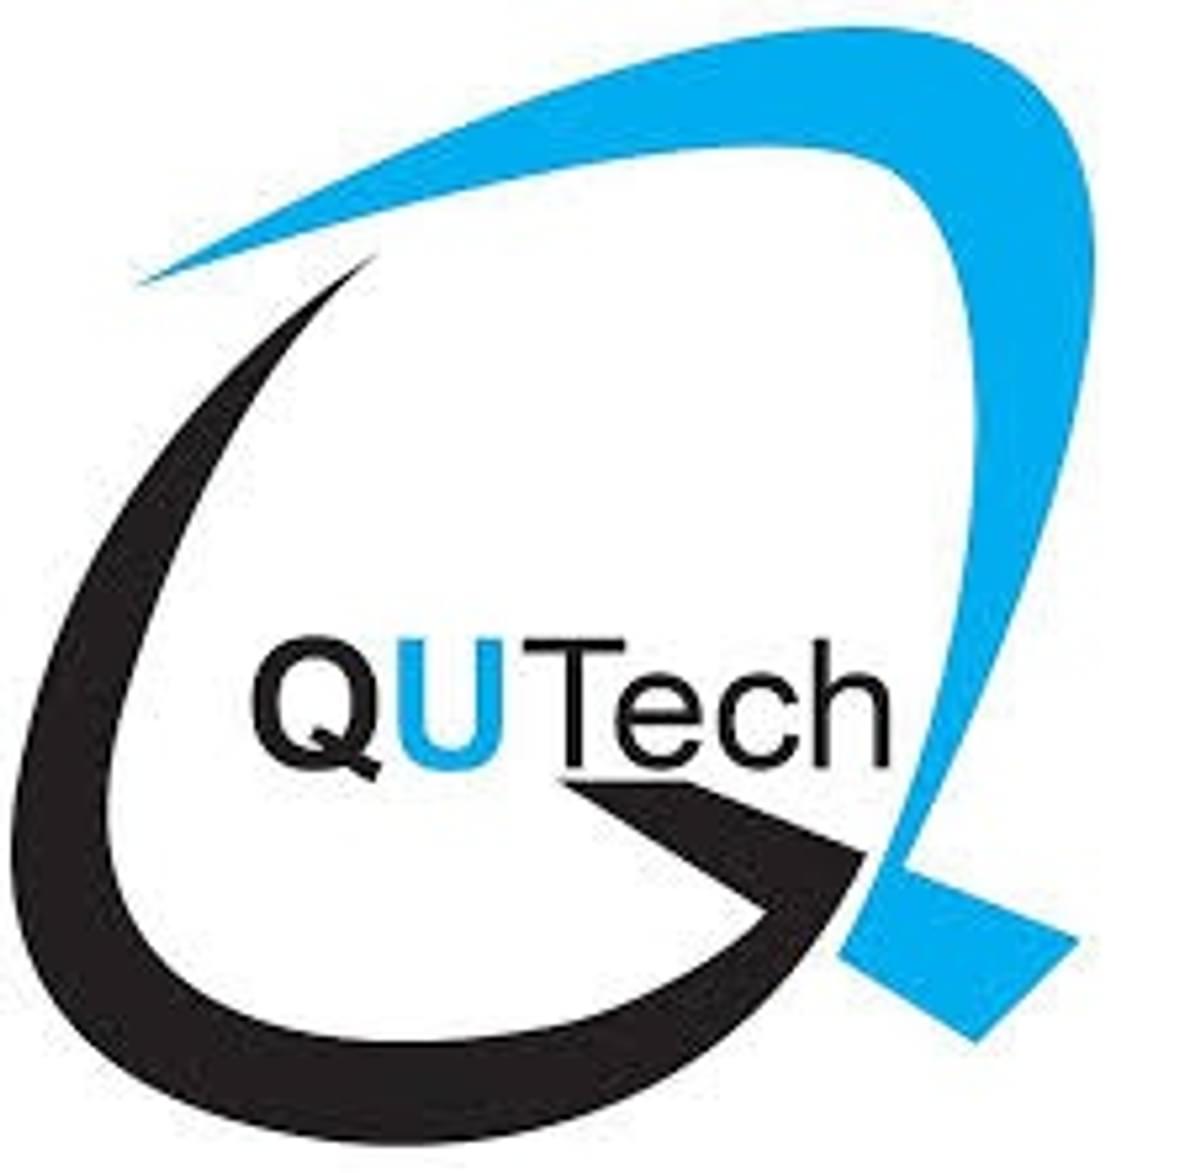 QuTech komt met simulator voor kwantumnetwerken image